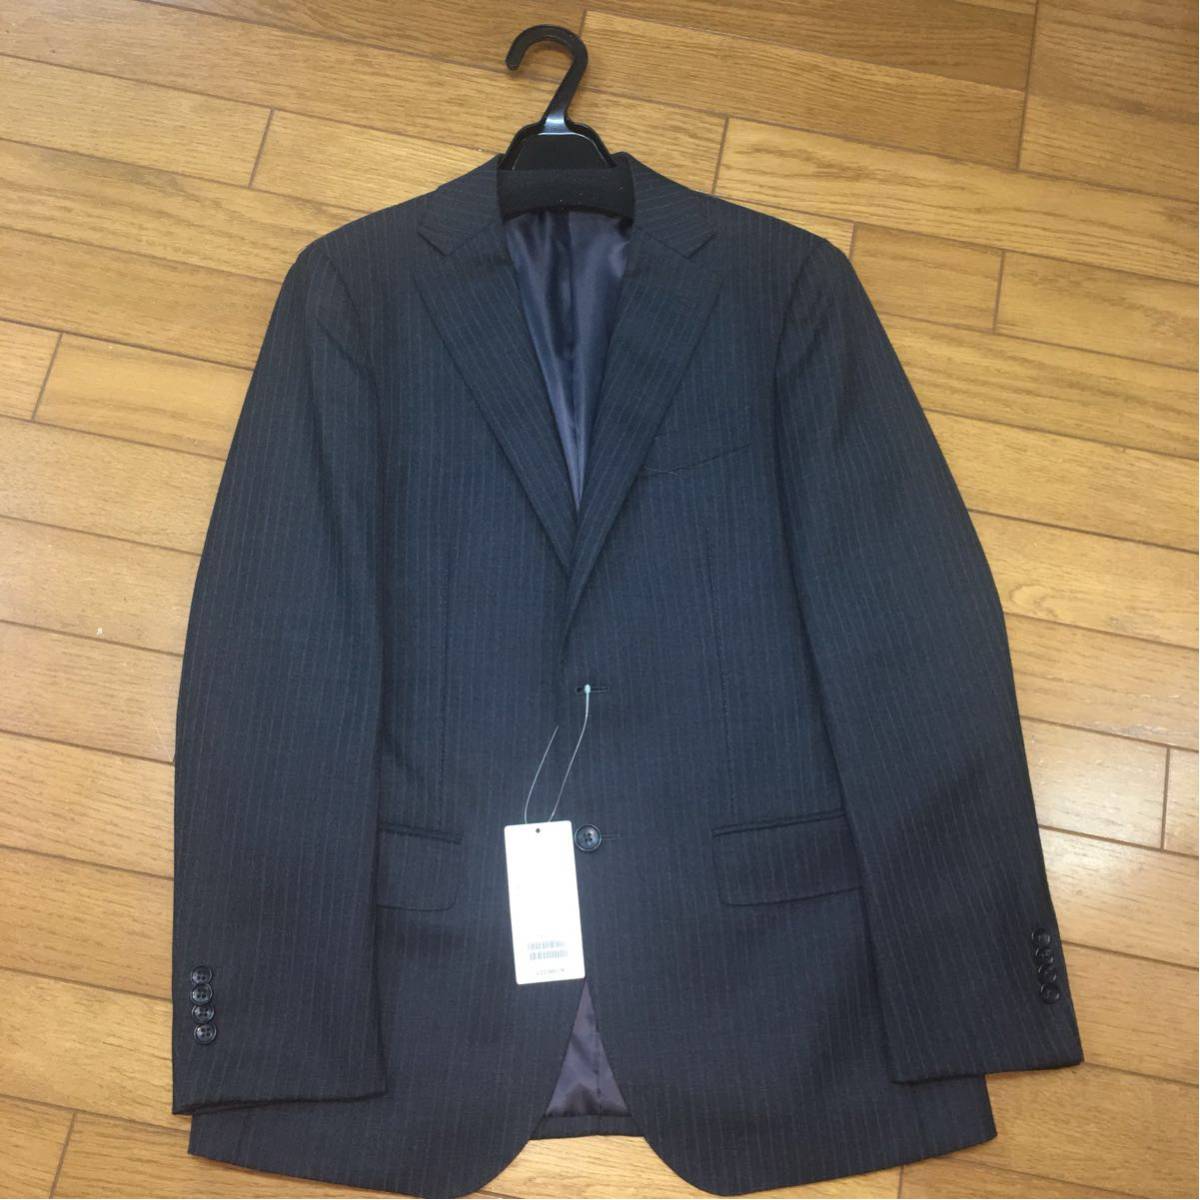  regular price 23760 jpy * Beams * suit jacket *46